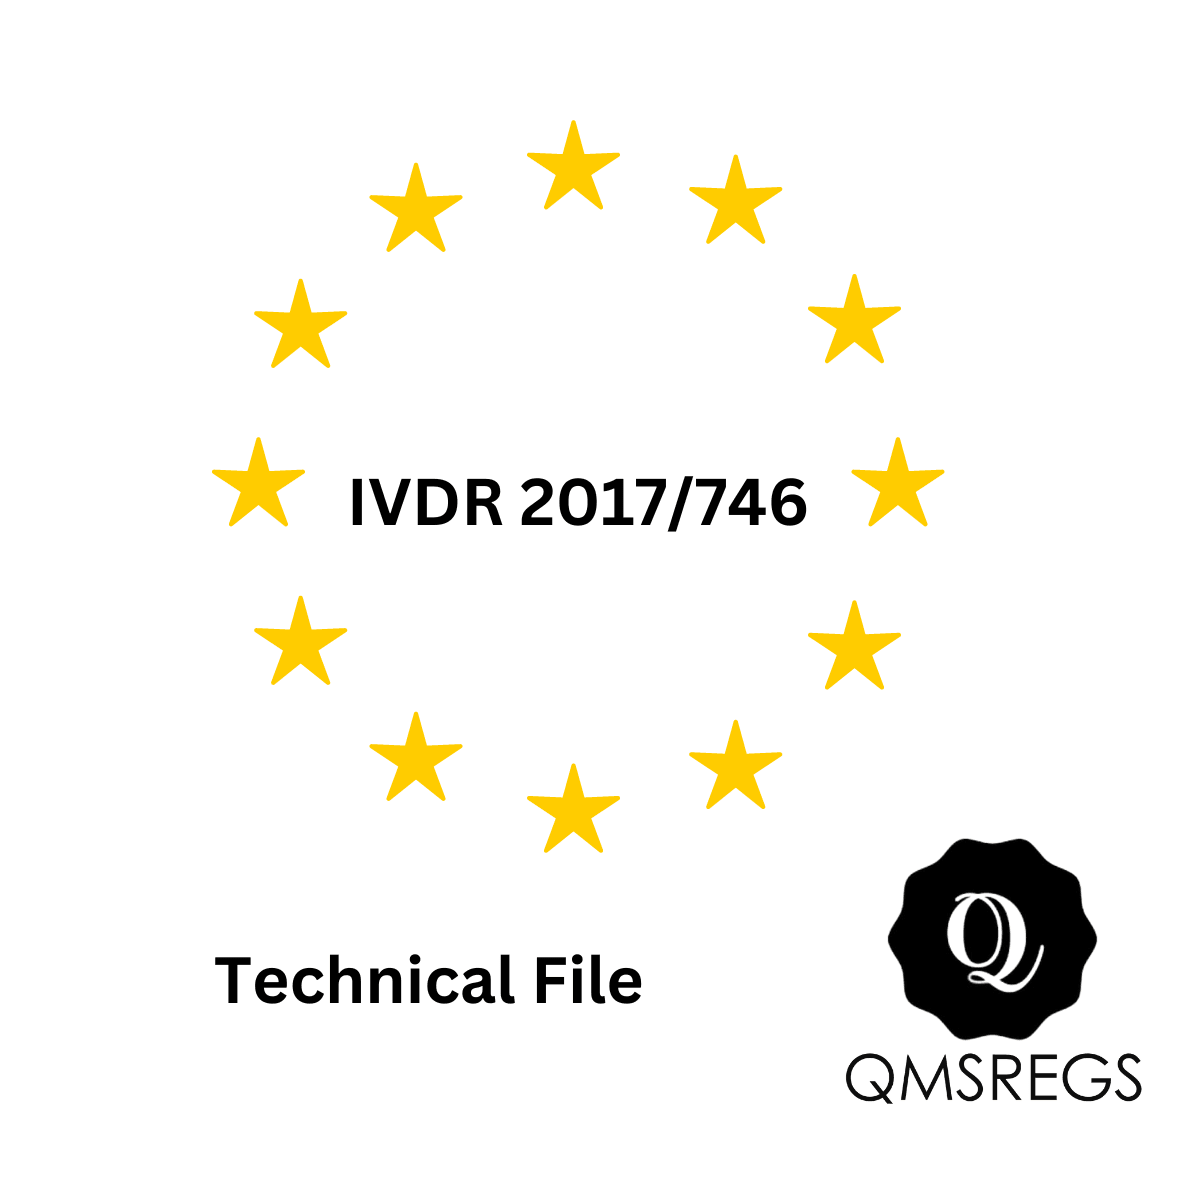 In Vitro Diagnostic Regulations 2017/746 Technical File Template